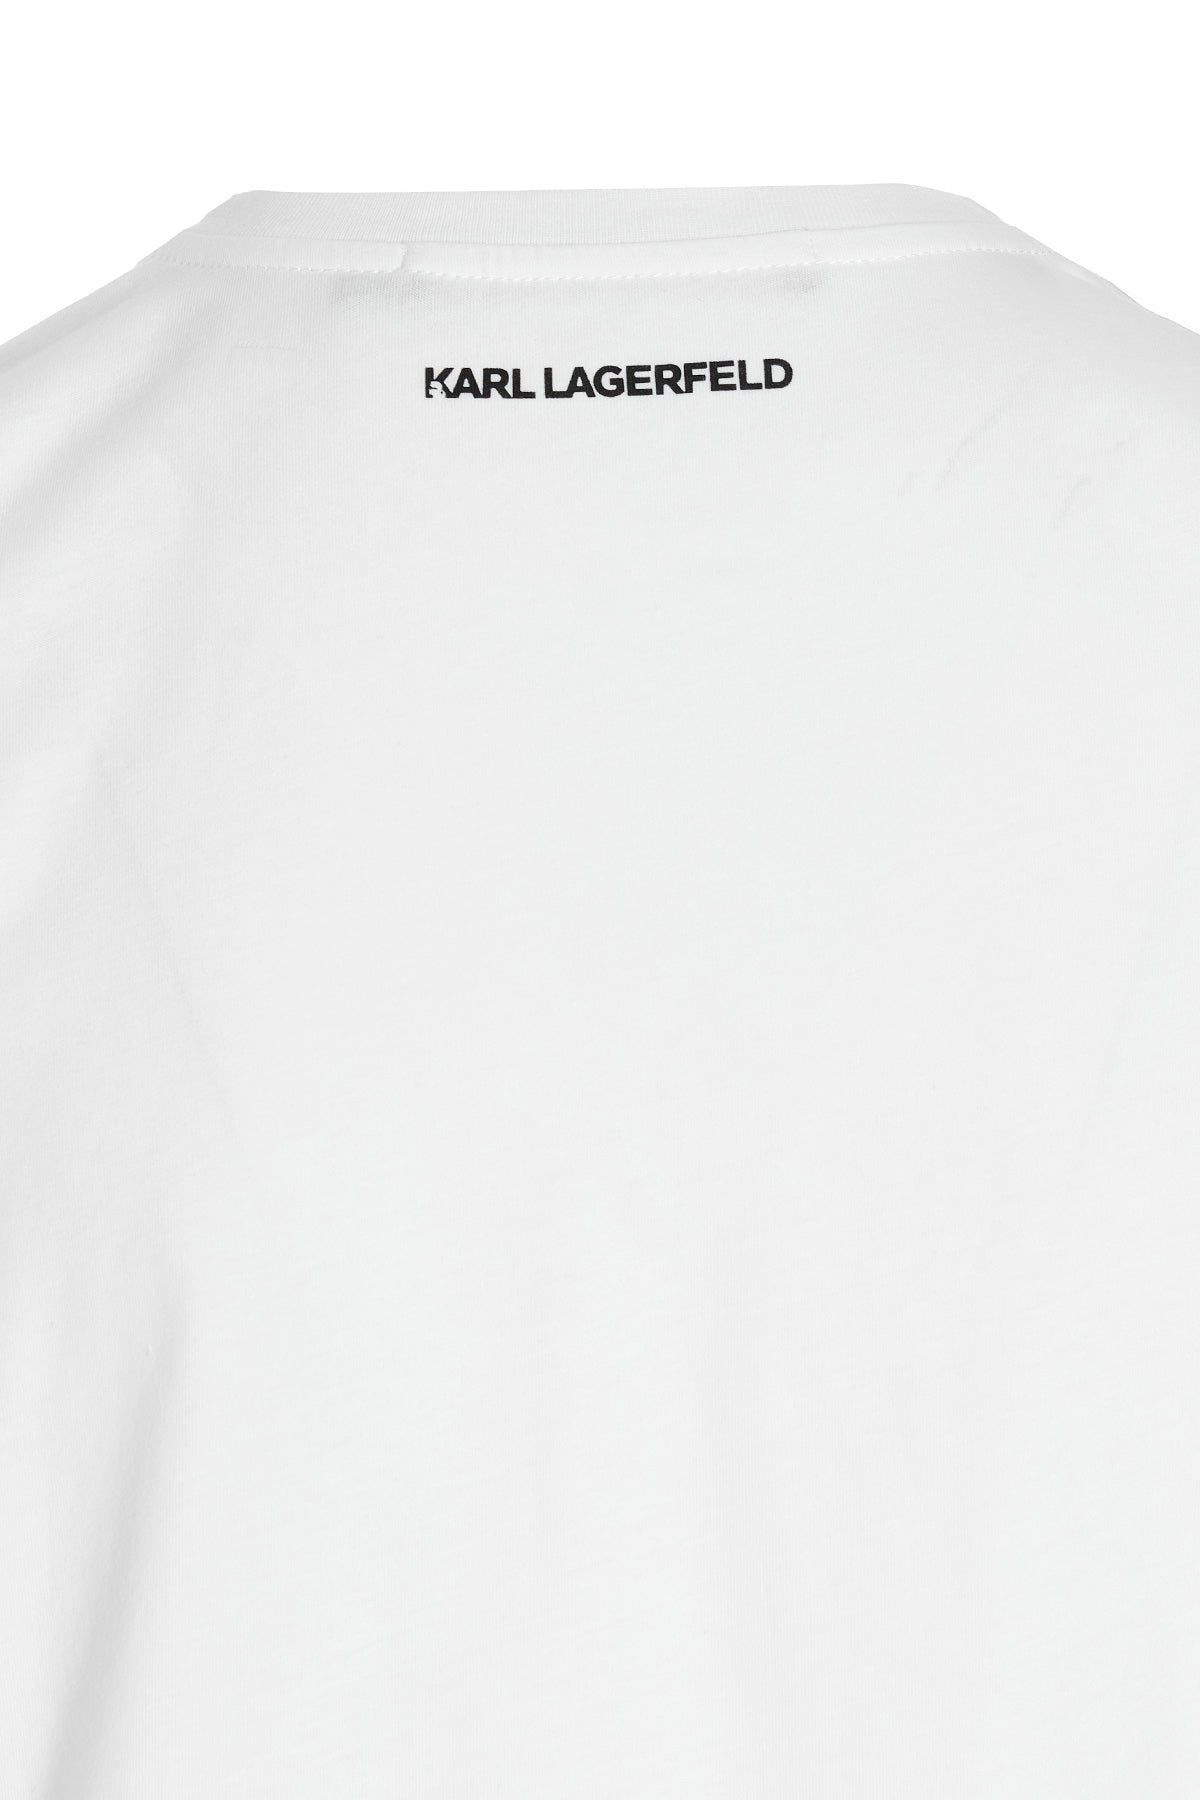 KARL LAGERFELD 'IKONIK 2.0' T-SHIRT 230W1704100